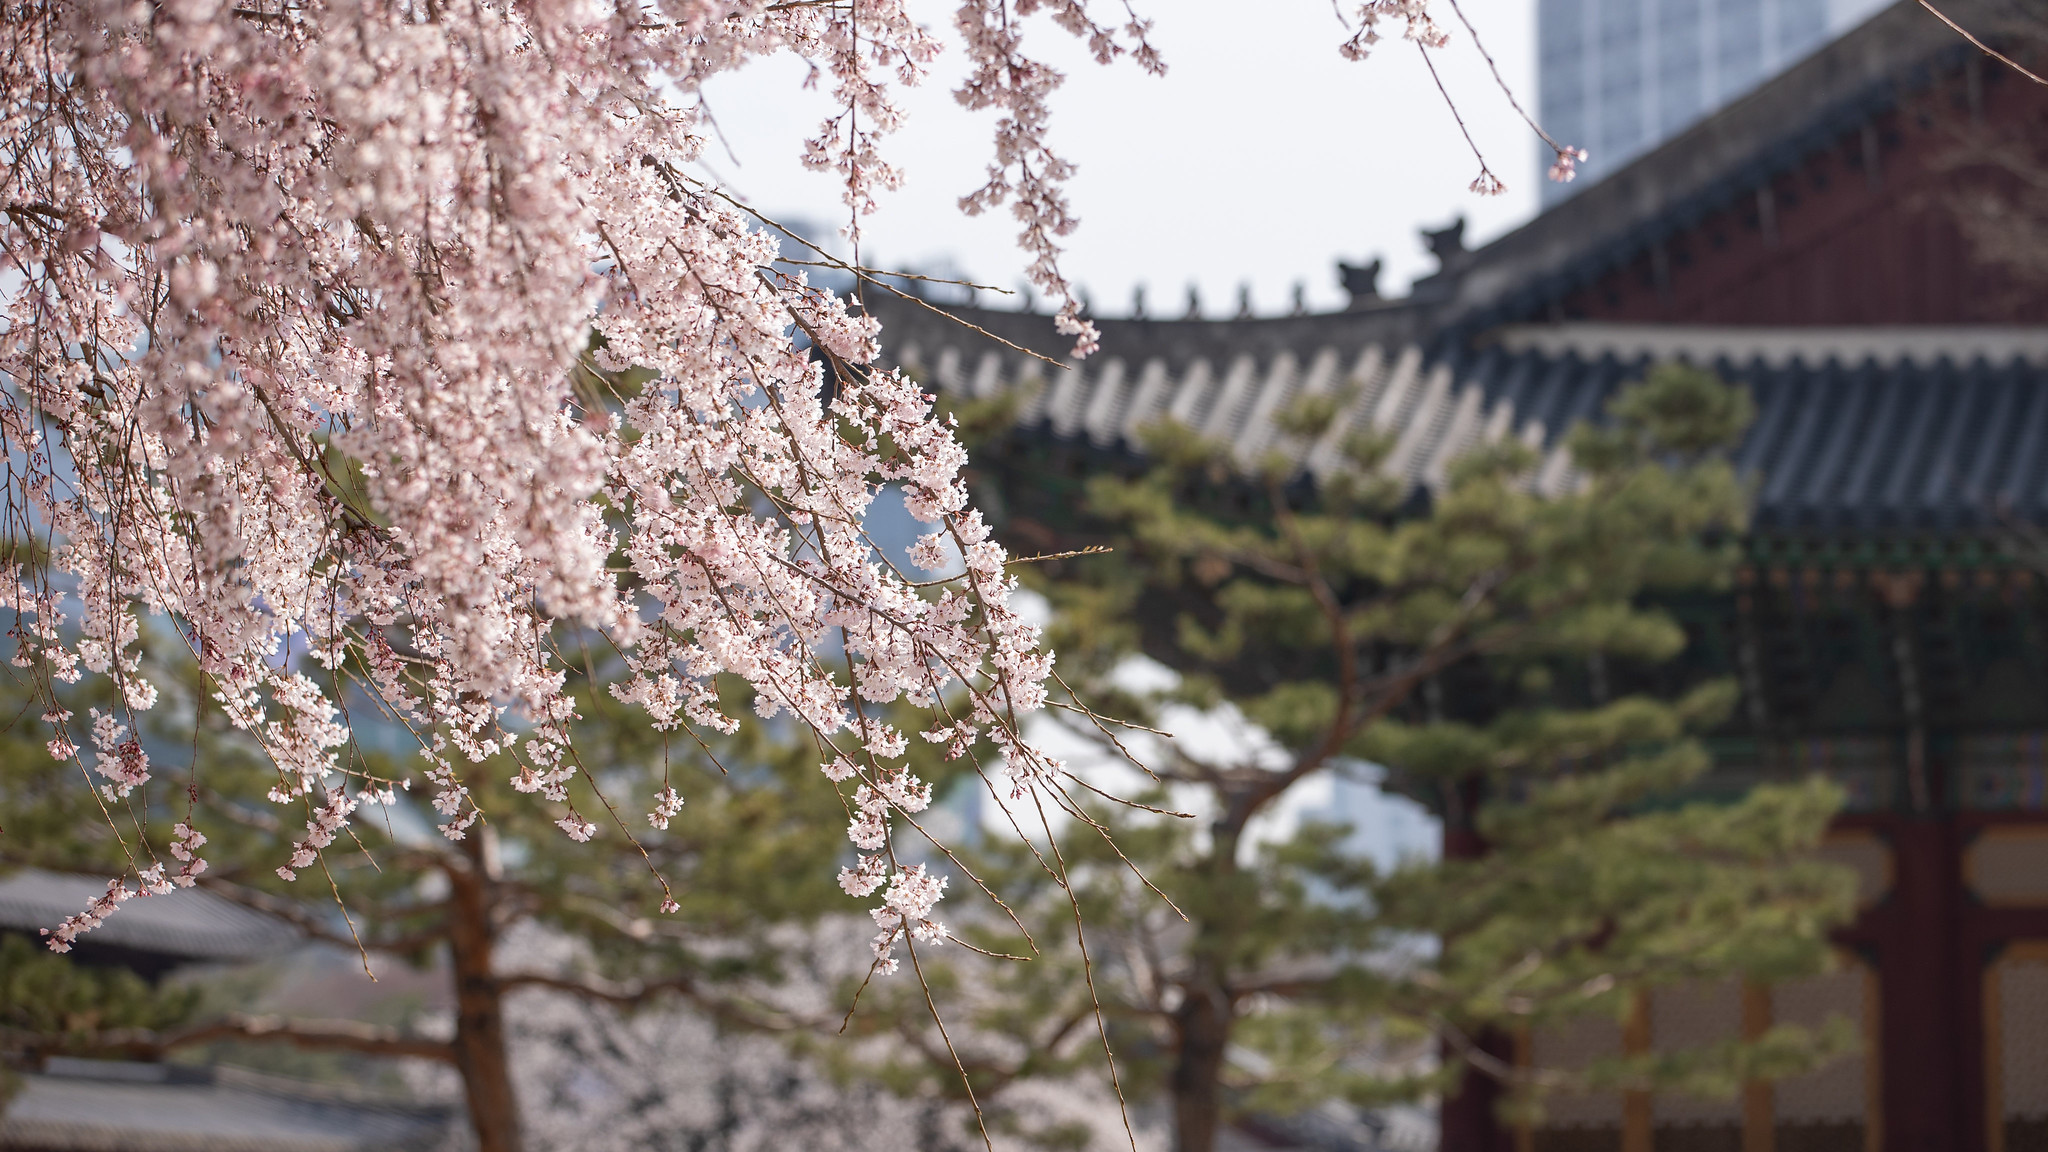 По сообщению частной метеорологической компании «Kweather» от 25 февраля, сезон цветения вишни в Корее в этом году наступит на 3-6 дней раньше, чем в среднем в 1991-2020 годах. На фото цветущая вишня во дворце Токсугун в Сеуле. / Фото: Korea.net